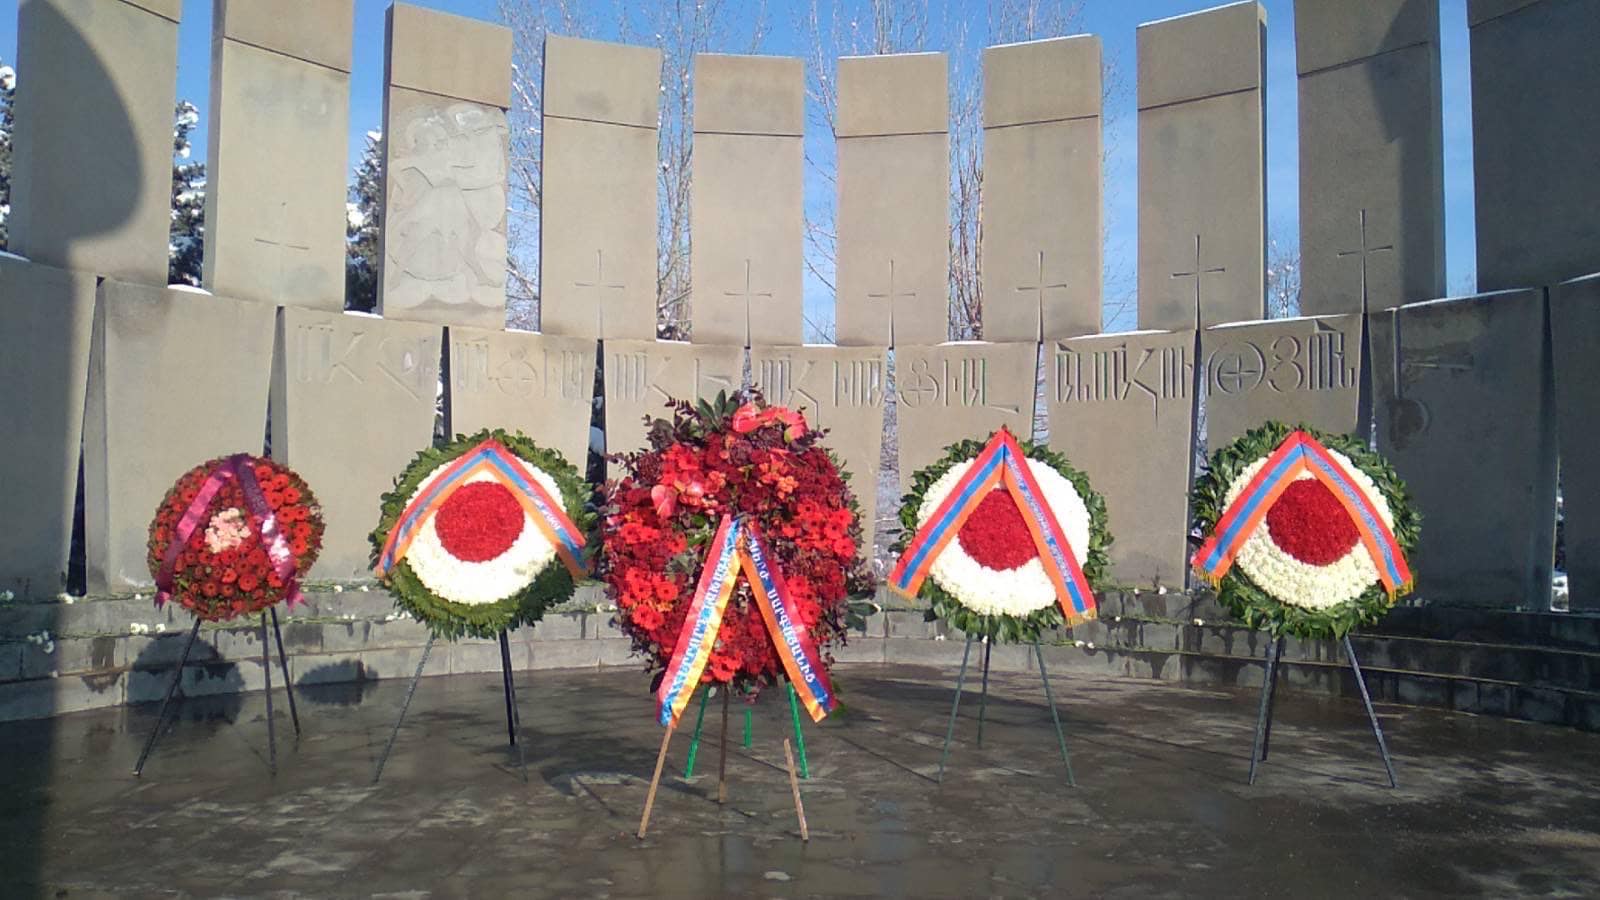 Սերժ Սարգսյանի անունից Բանակի օրվա առթիվ ծաղկեպսակ է դրվել կյանքը զոհաբերած նվիրյալների հիշատակին